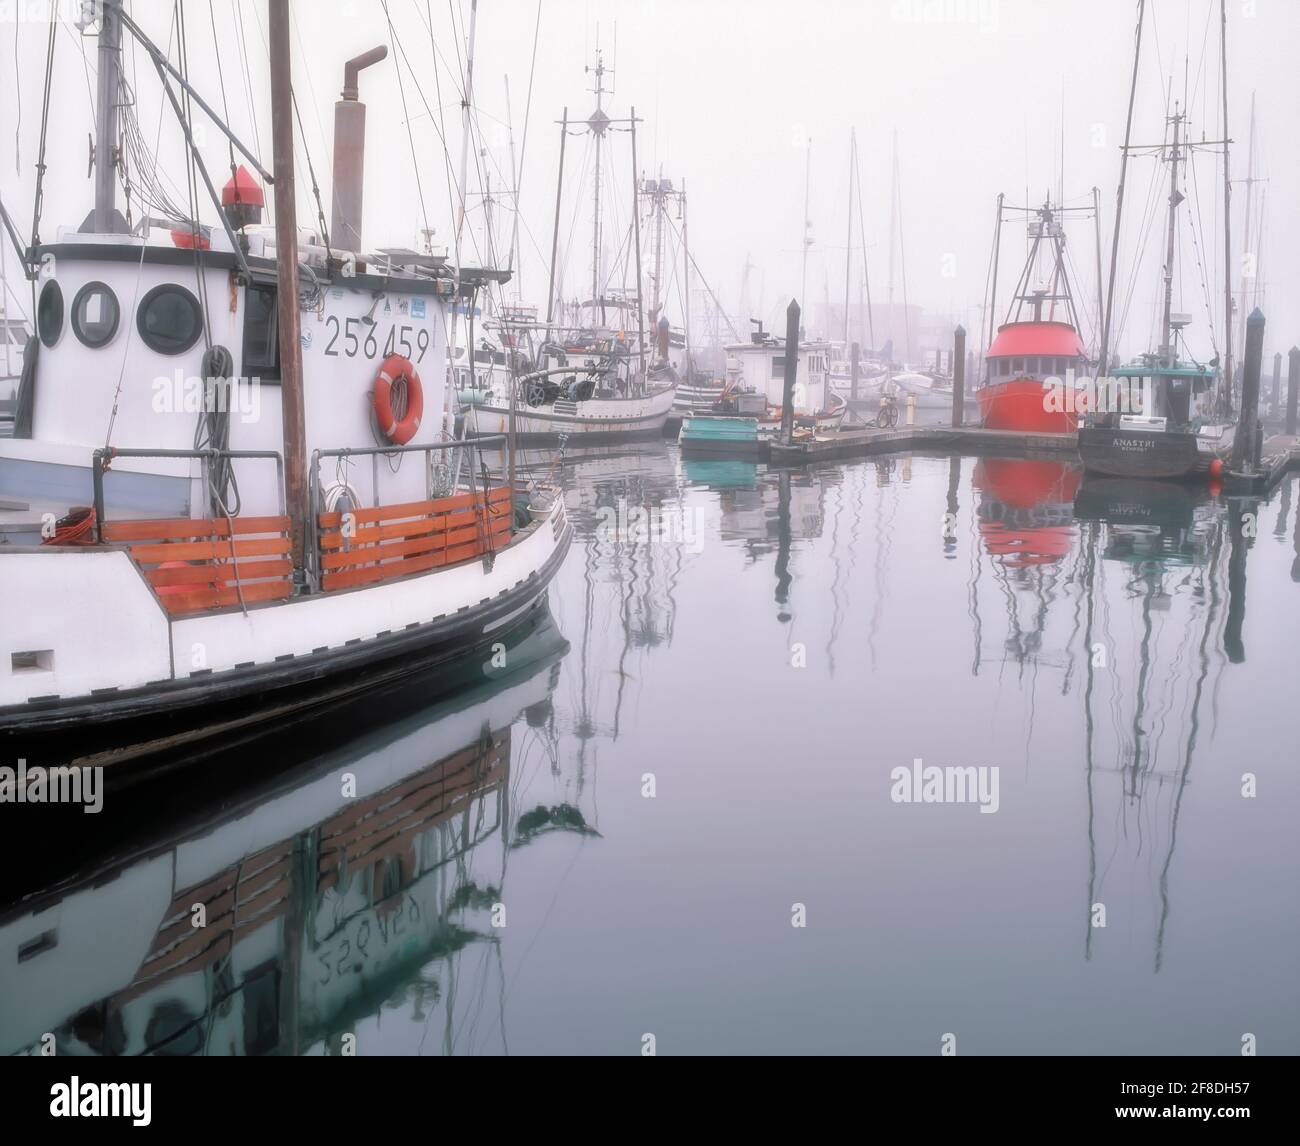 La levée du brouillard matinal révèle la flotte de pêche commerciale à Charleston Harbour, sur la côte sud de l’Oregon, près de Coos Bay. Banque D'Images